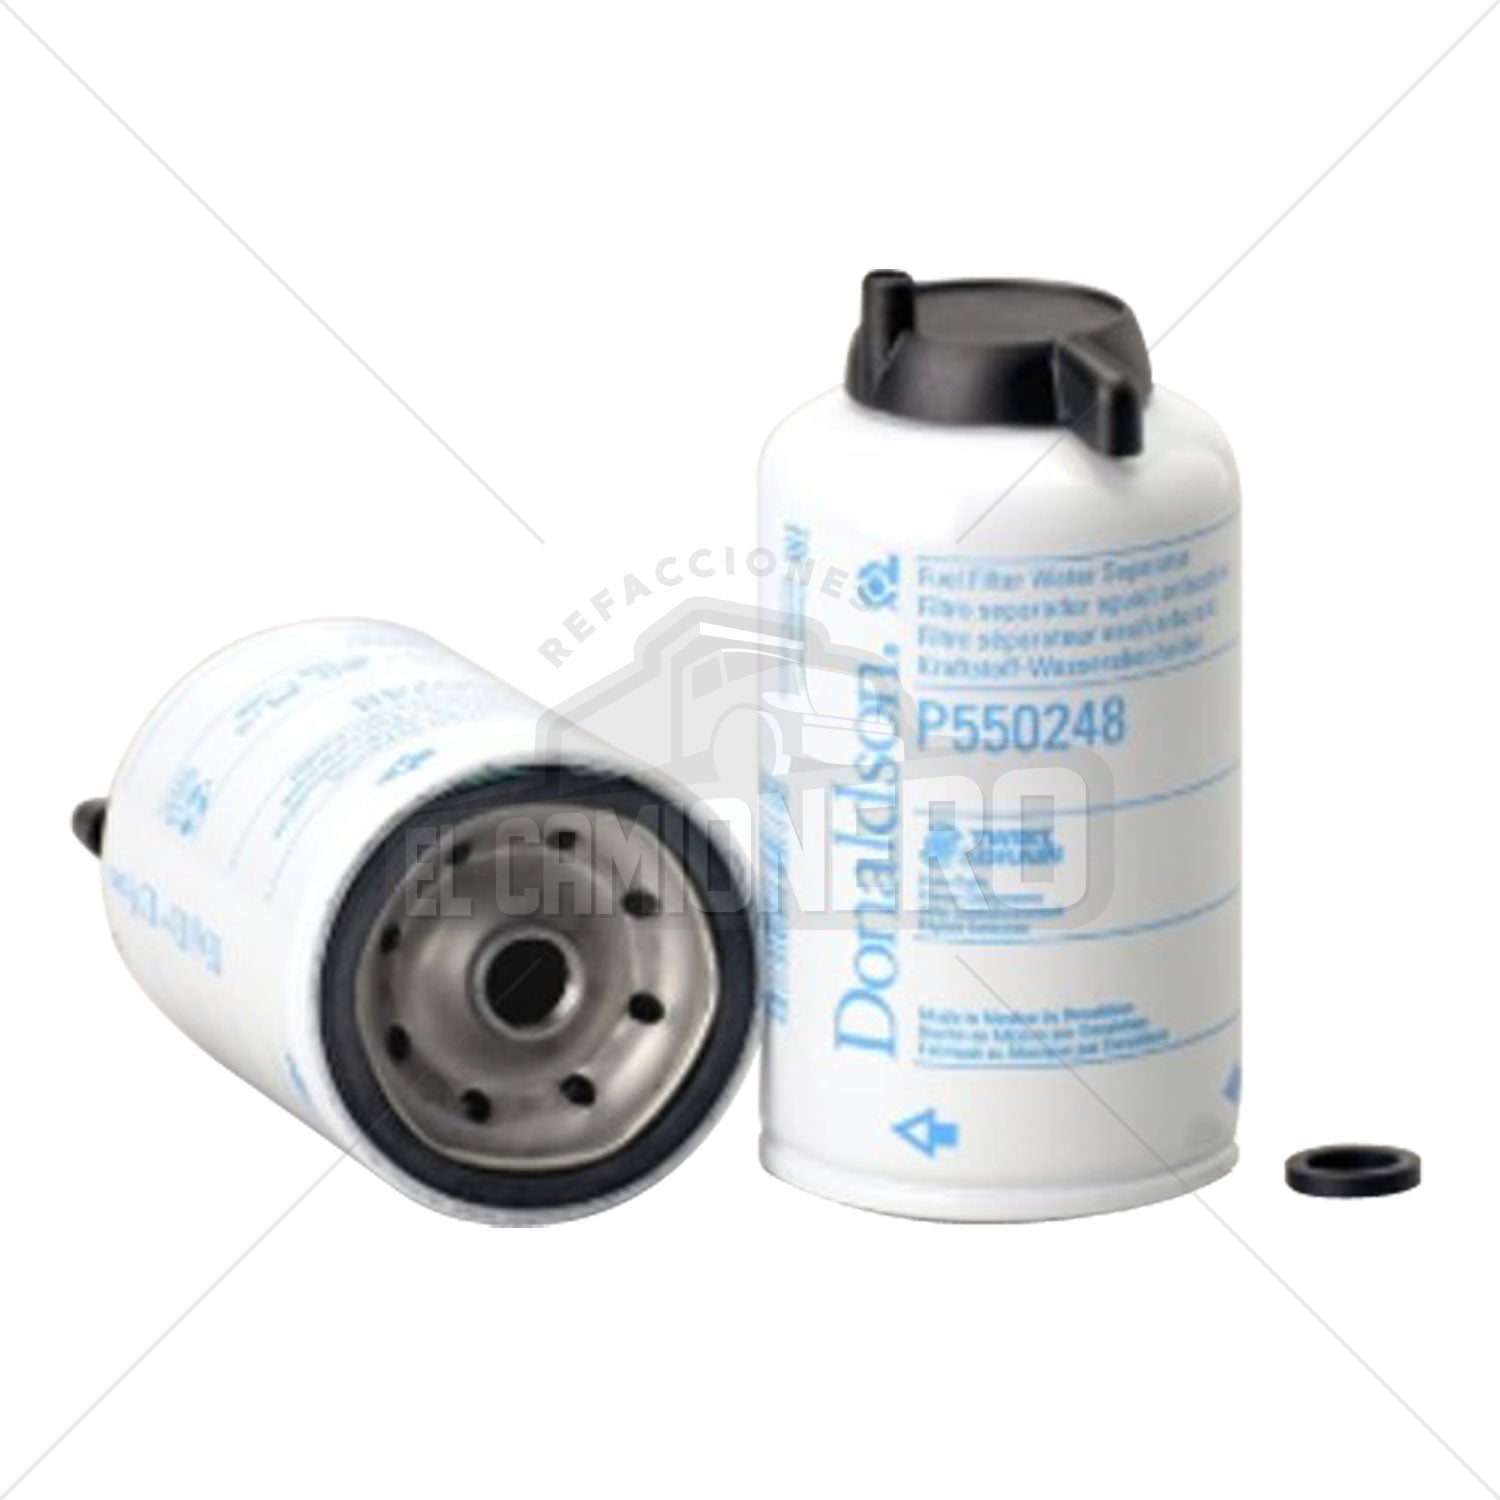 Filtro de combustible separador de agua Donaldson P550248